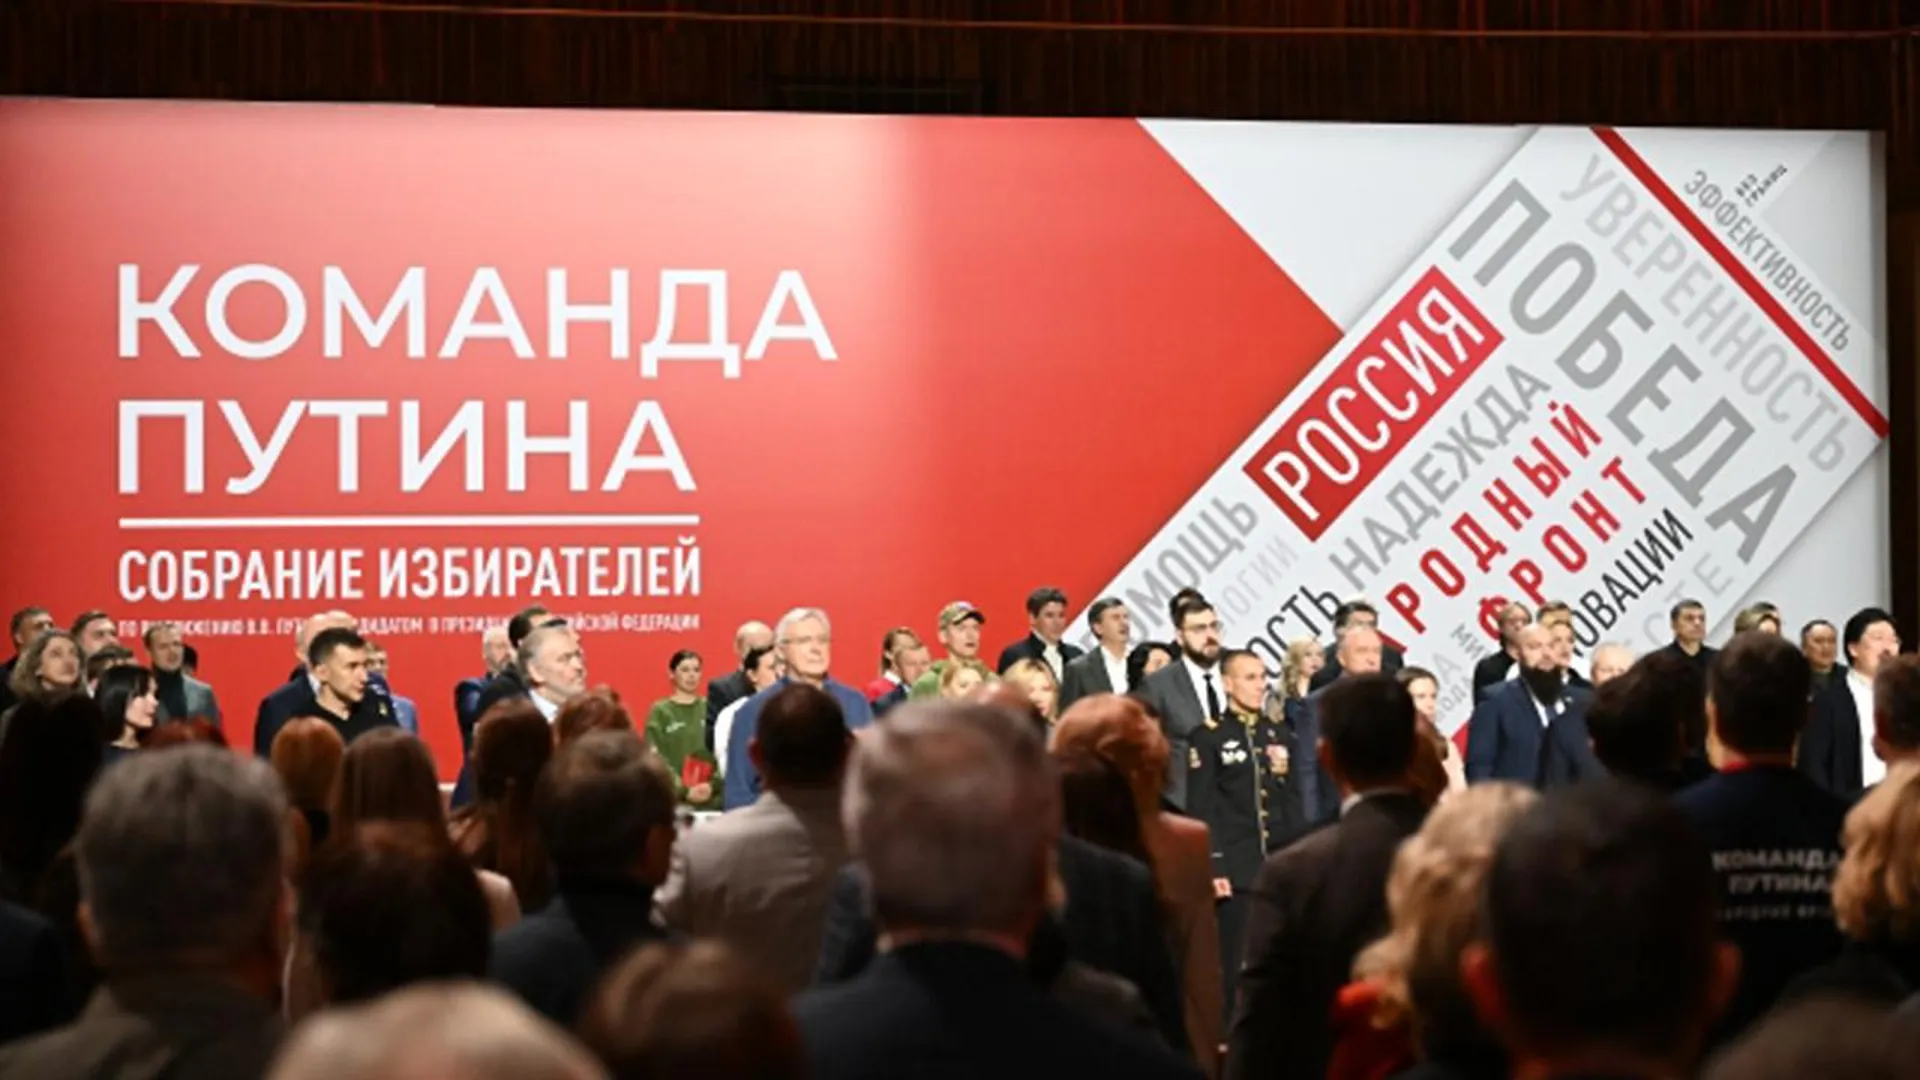 Инна Карагичева: многие жители поддерживают выдвижение Владимира Путина на пост президента